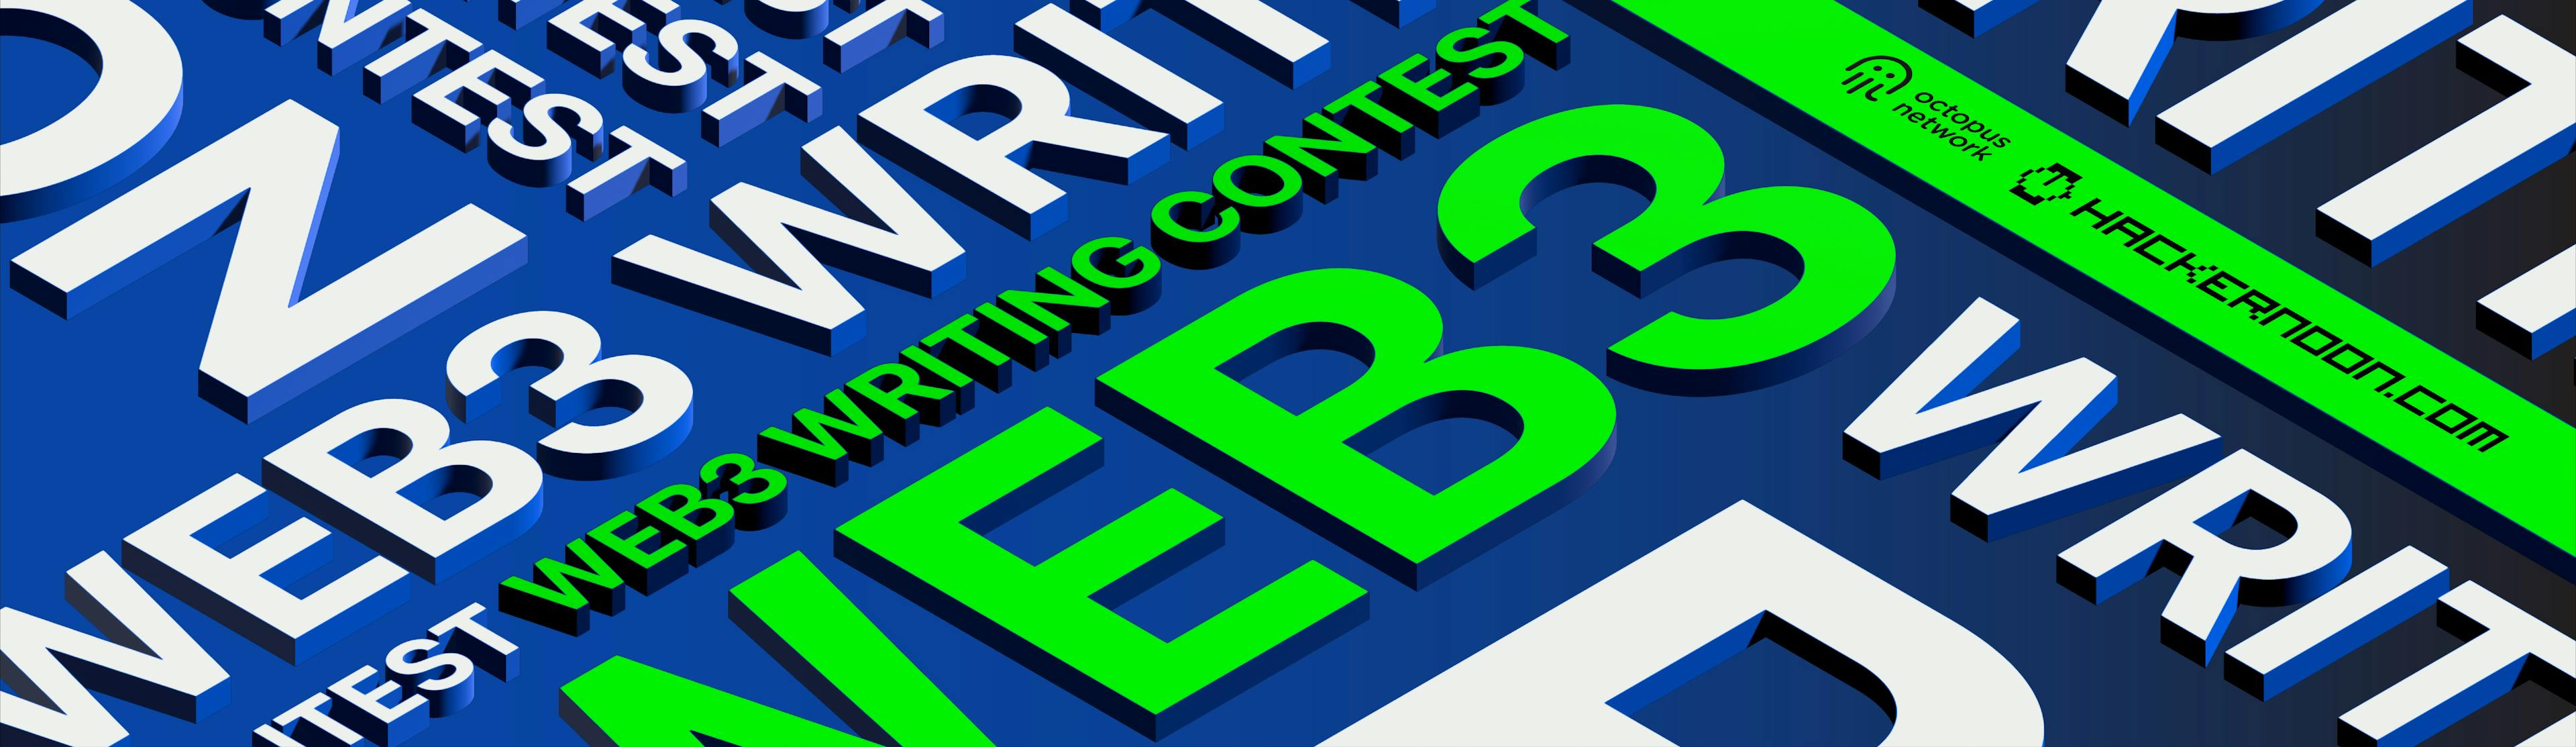 featured image - Concurso de escritura #Web3: ¡Resultados de marzo de 2022 anunciados!